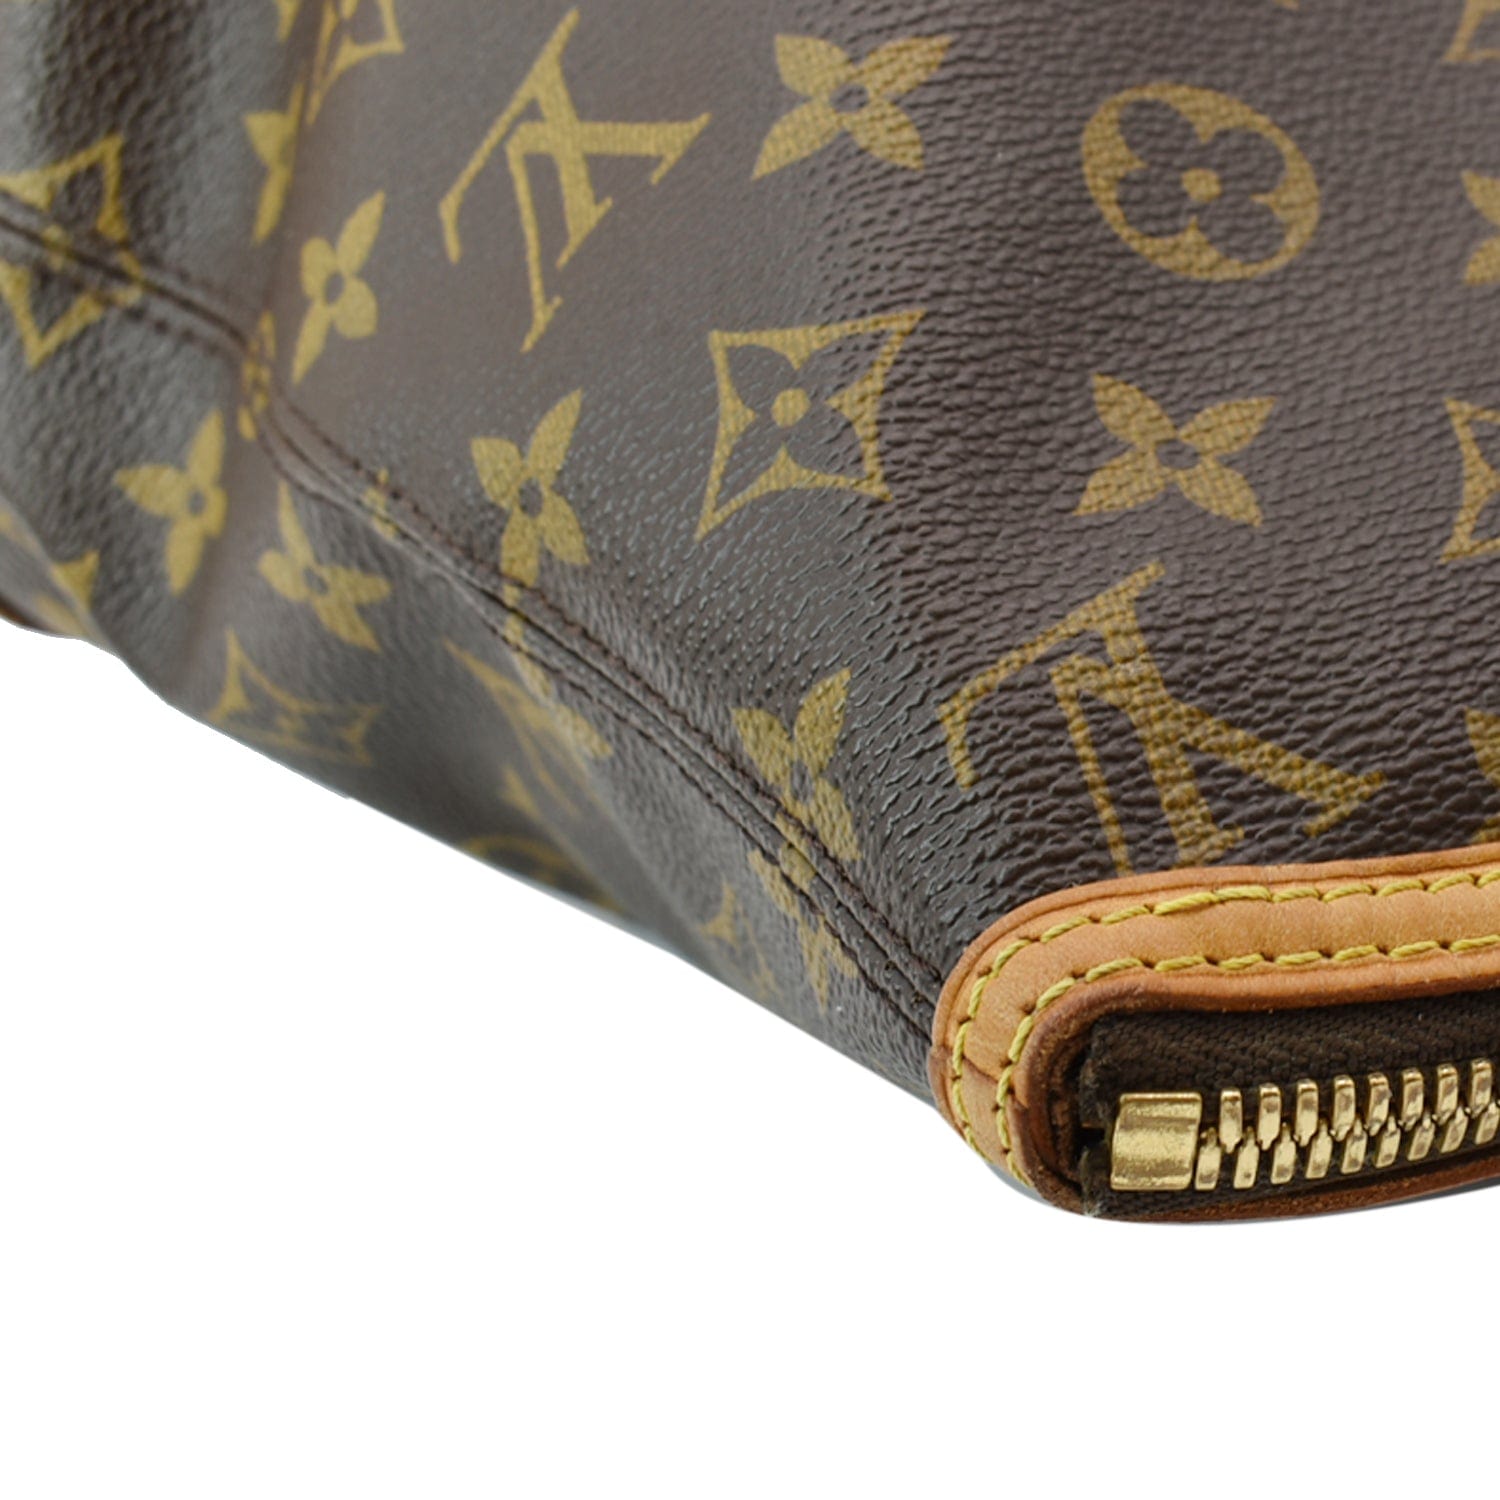 Louis Vuitton, Bags, Authentic Louis Vuitton Monogram Lockit Bag